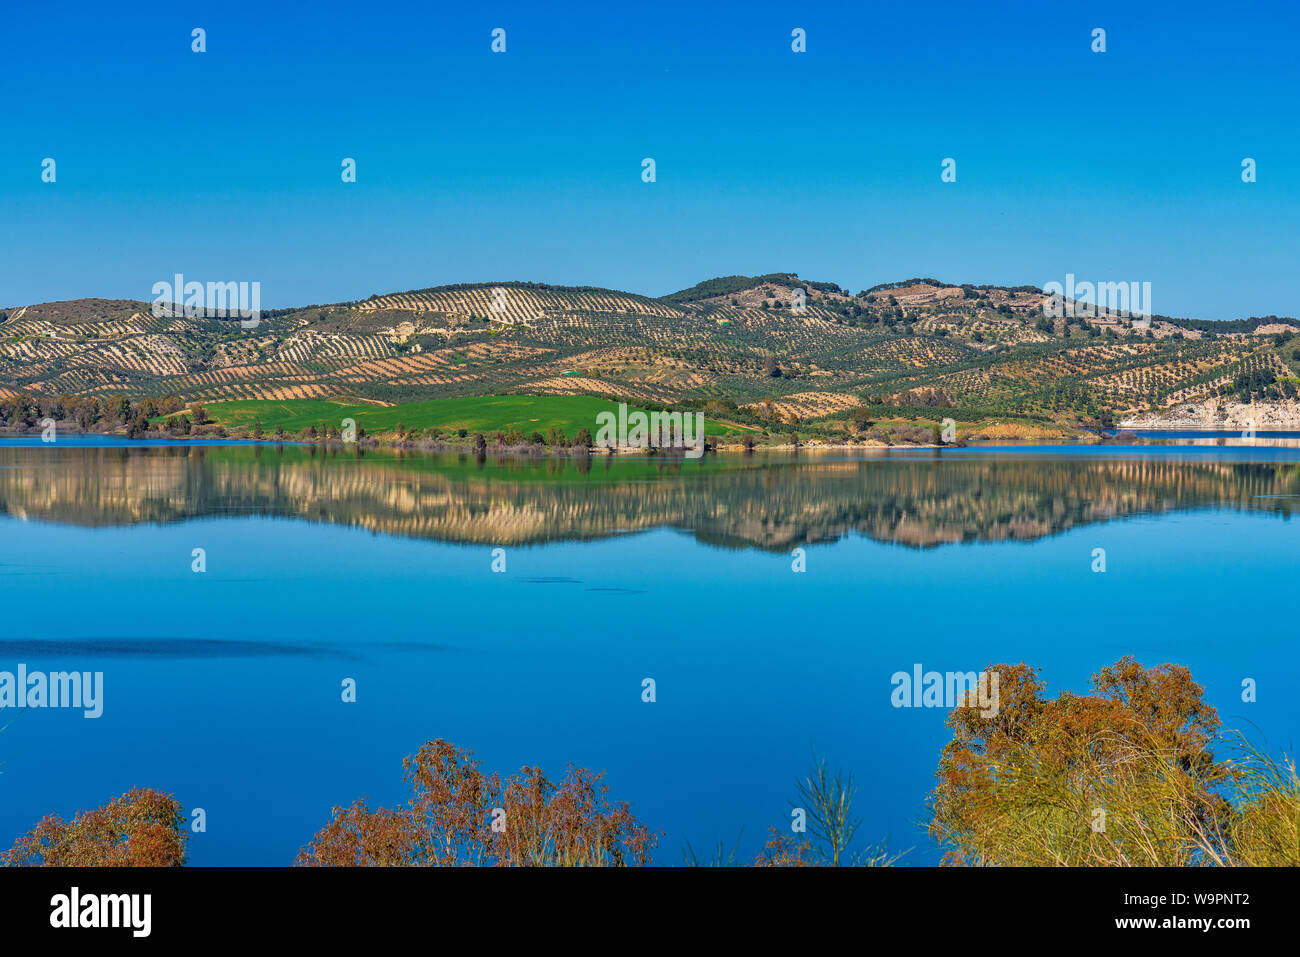 Schöne Sicht auf den See Embalse del Guadalhorce, Ardales Behälter in der Provinz Malaga, Andalusien, Spanien Stockfoto